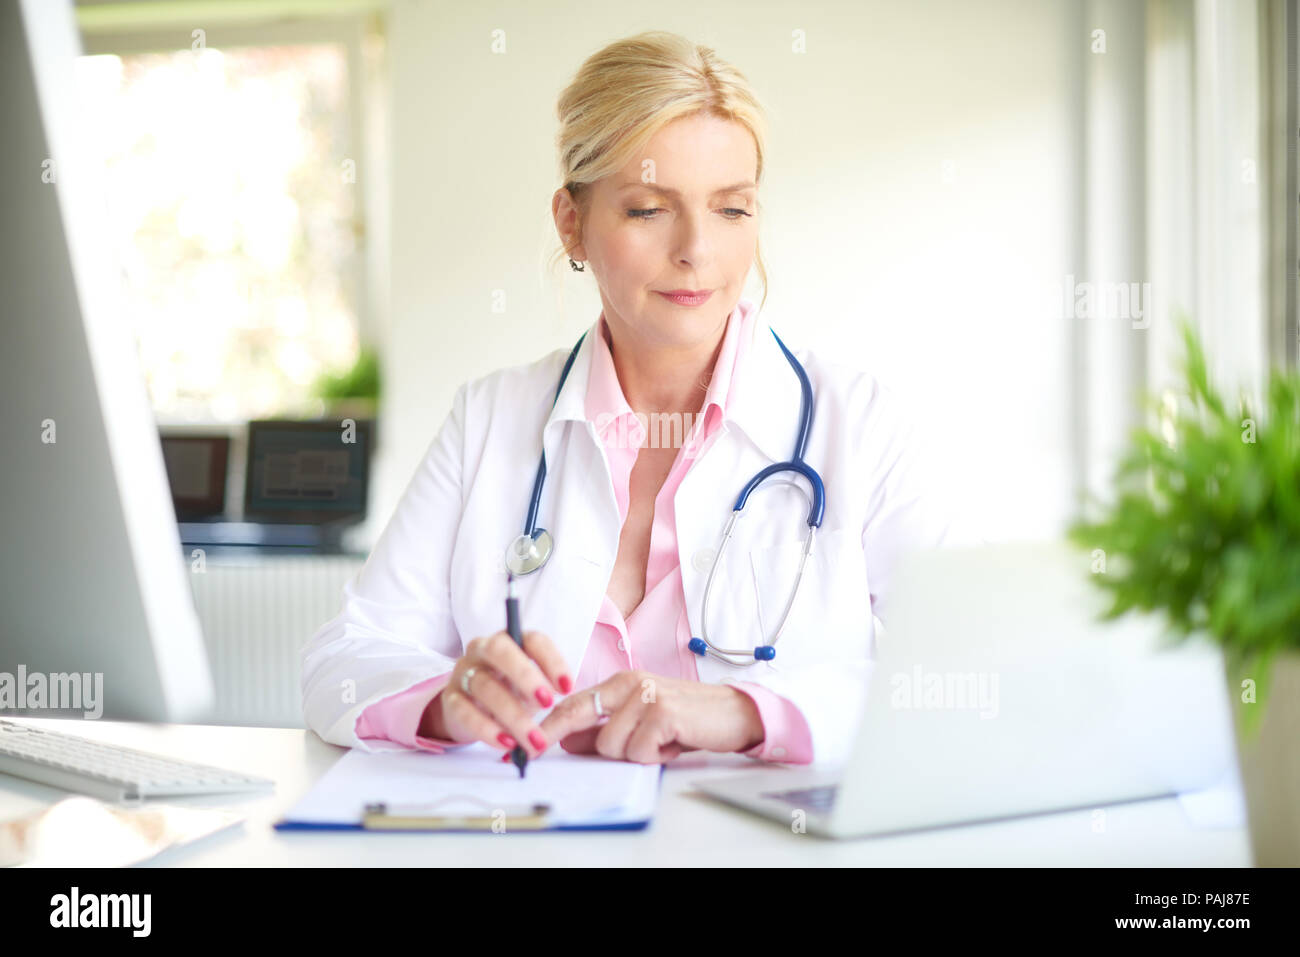 Ancianas sonriente doctor sentado en la sala del médico y el uso de la computadora y la computadora portátil mientras escribía el diagnóstico. Foto de stock